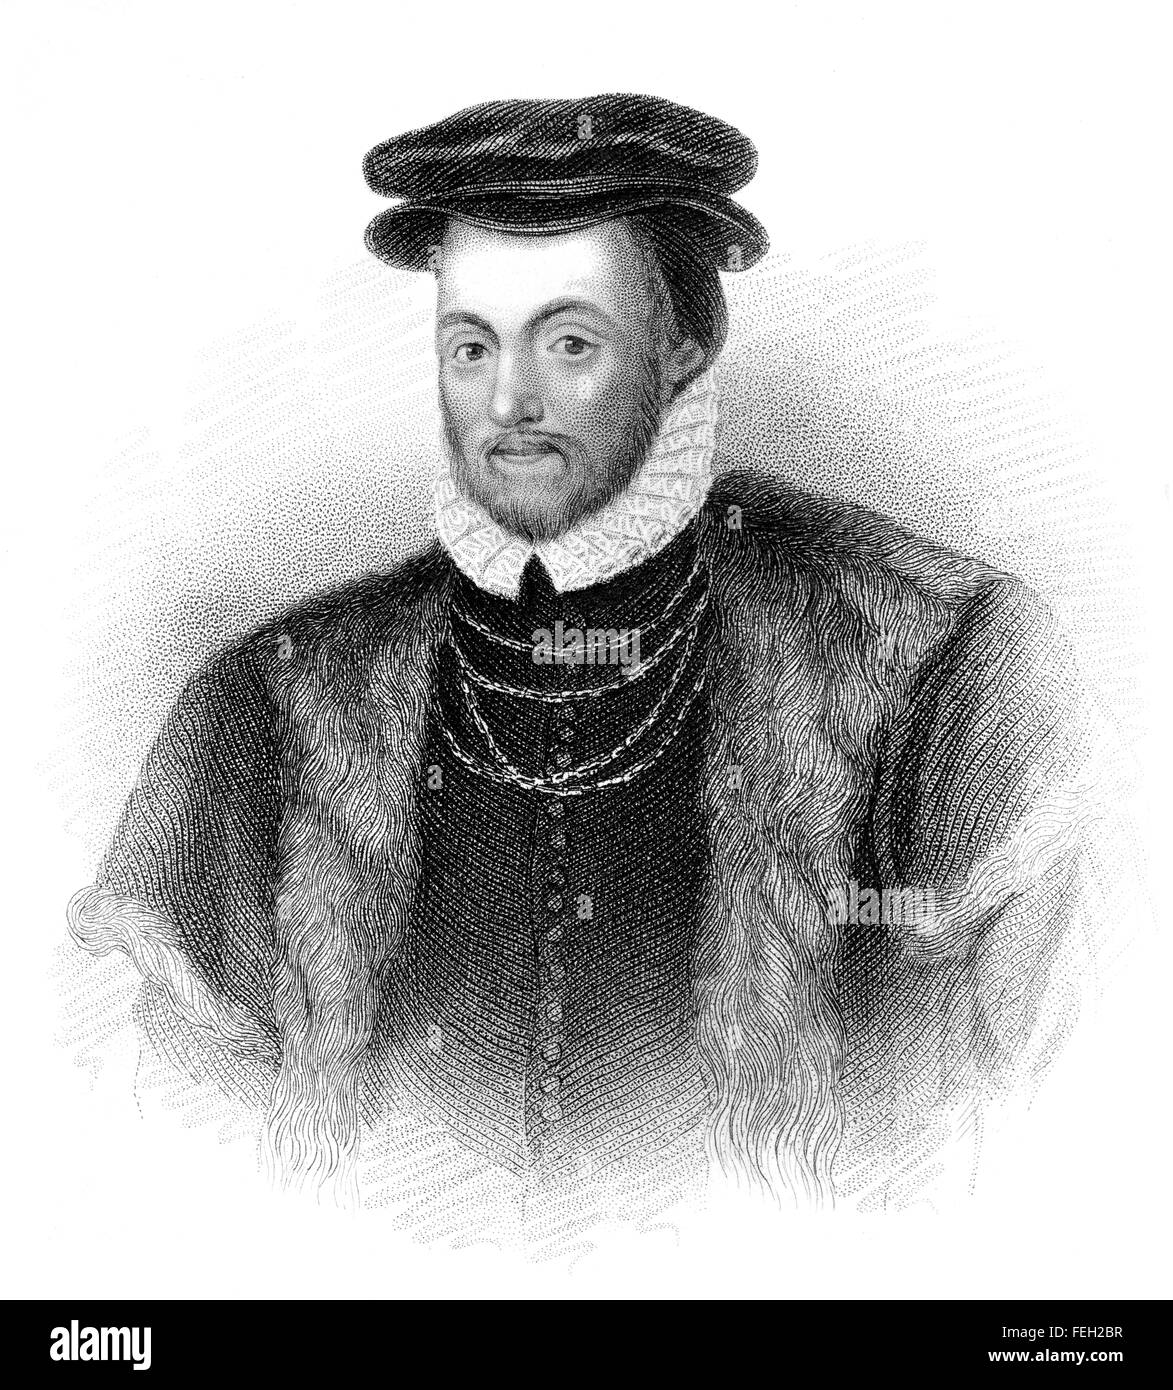 Edward au Nord, 1er baron nord, ch. 1496-1564, un homme politique anglais et par les pairs Banque D'Images